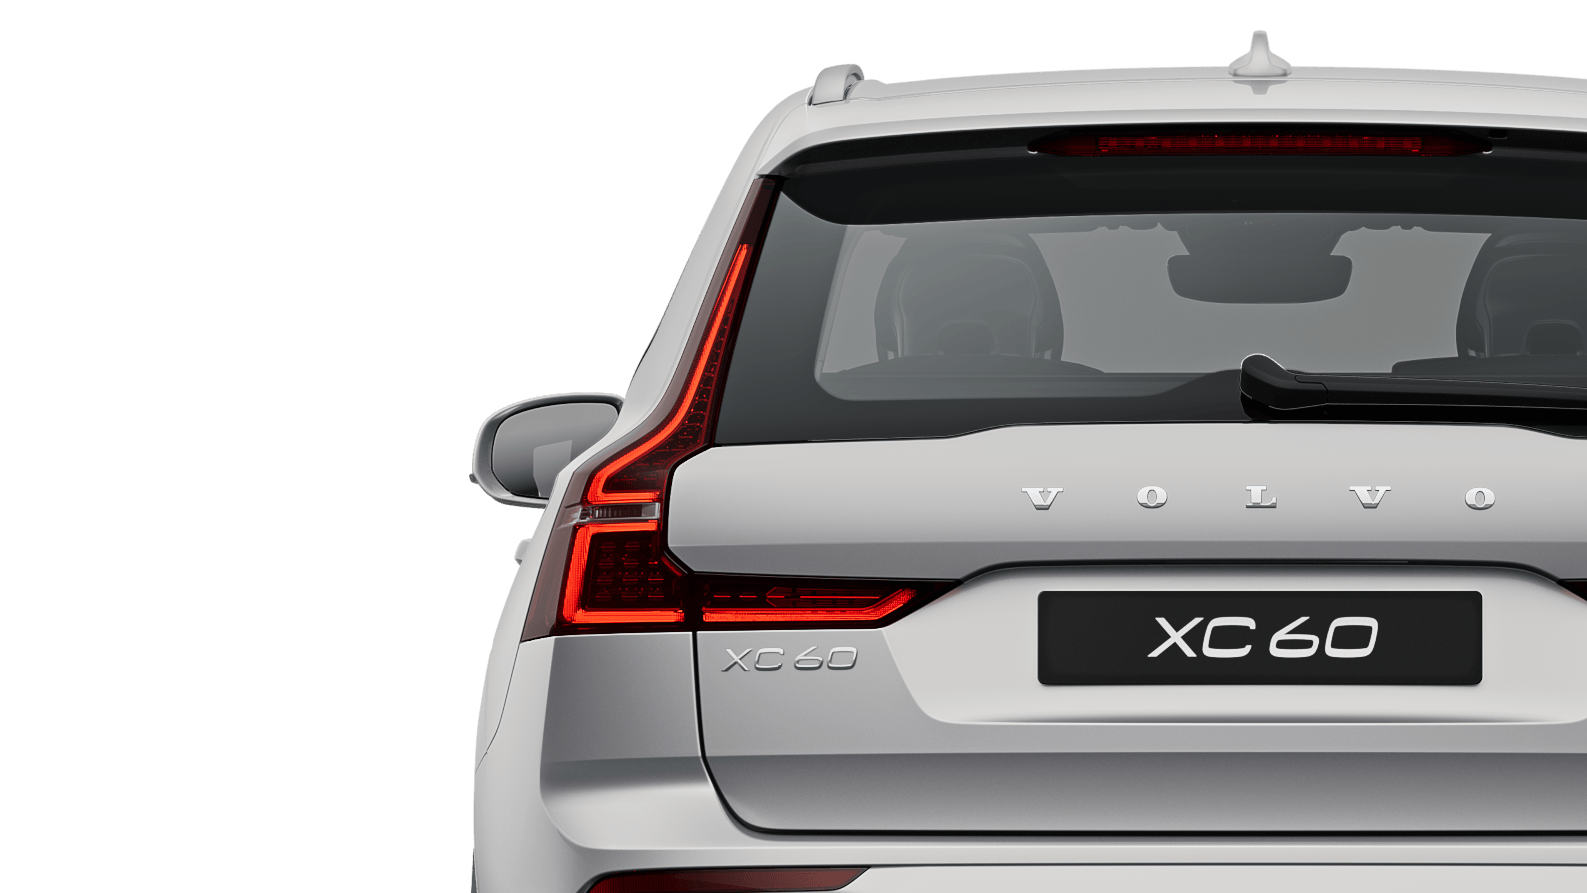 Stojící plug-in hybridní Volvo XC60 Recharge v sytě stříbrném odstínu laku Silver Dawn